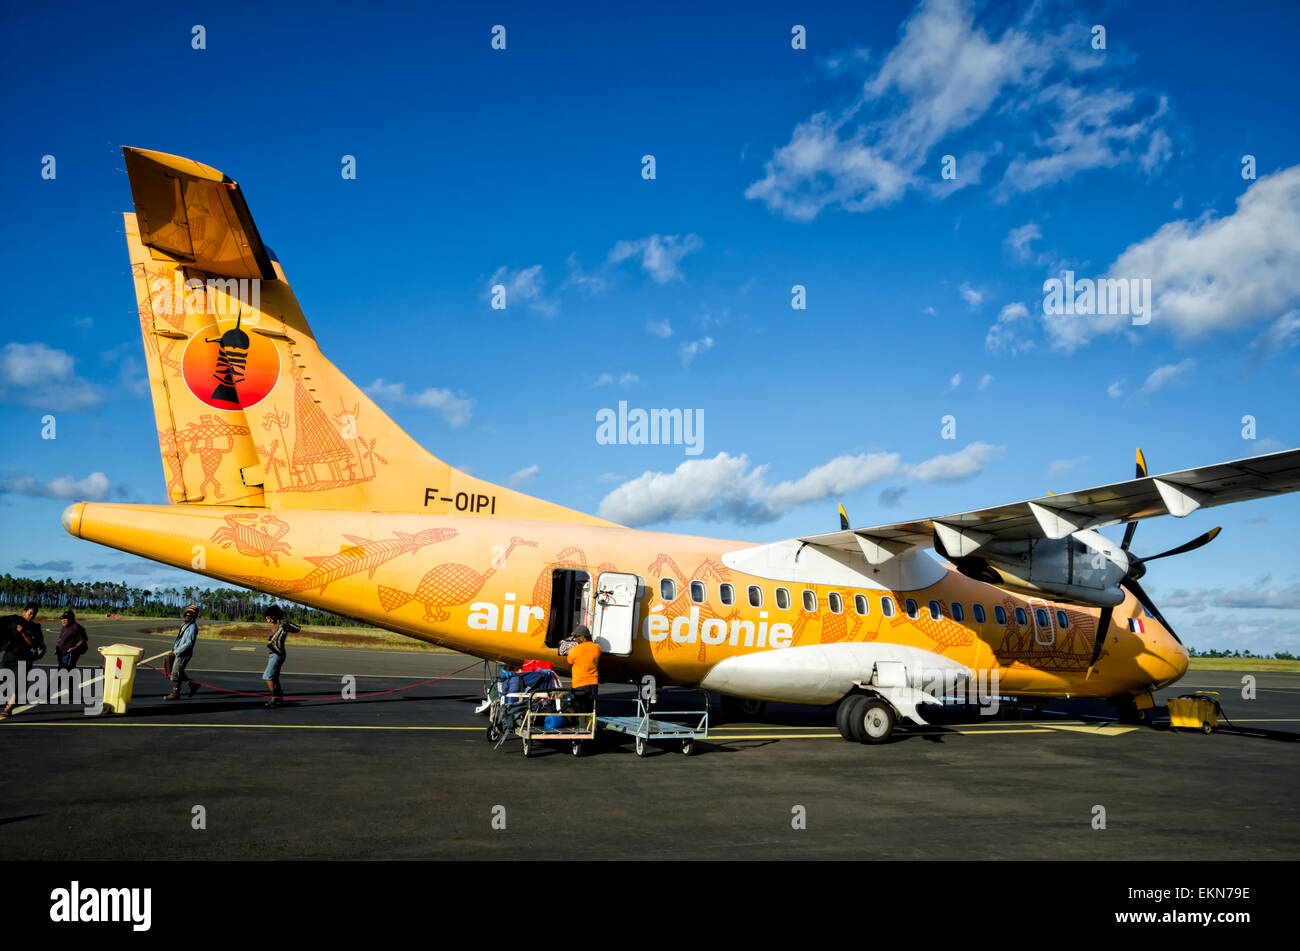 Piccolo ATR42 a turboelica aereo di linea in una livrea speciale per celebrare indigeni Nuova Caledonia cultura. Air Caledonie; piccolo aereo all'aeroporto; a terra Foto Stock